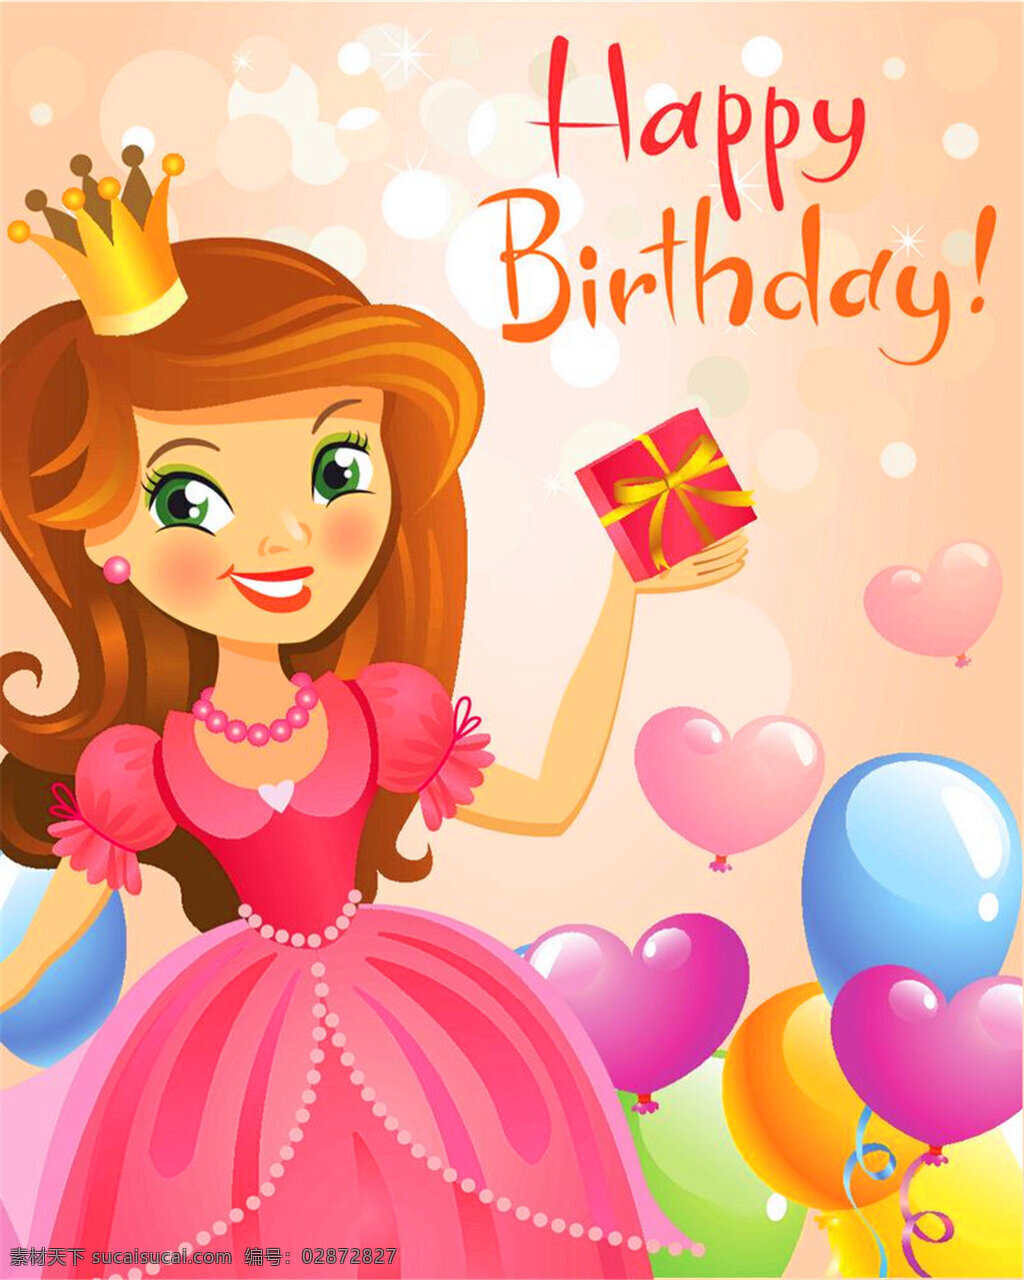 彩色 生日 气球 白雪公主 礼包 礼品 礼物 面具 派对 生日蛋糕 蜡烛 装饰 生日礼帽 蛋糕